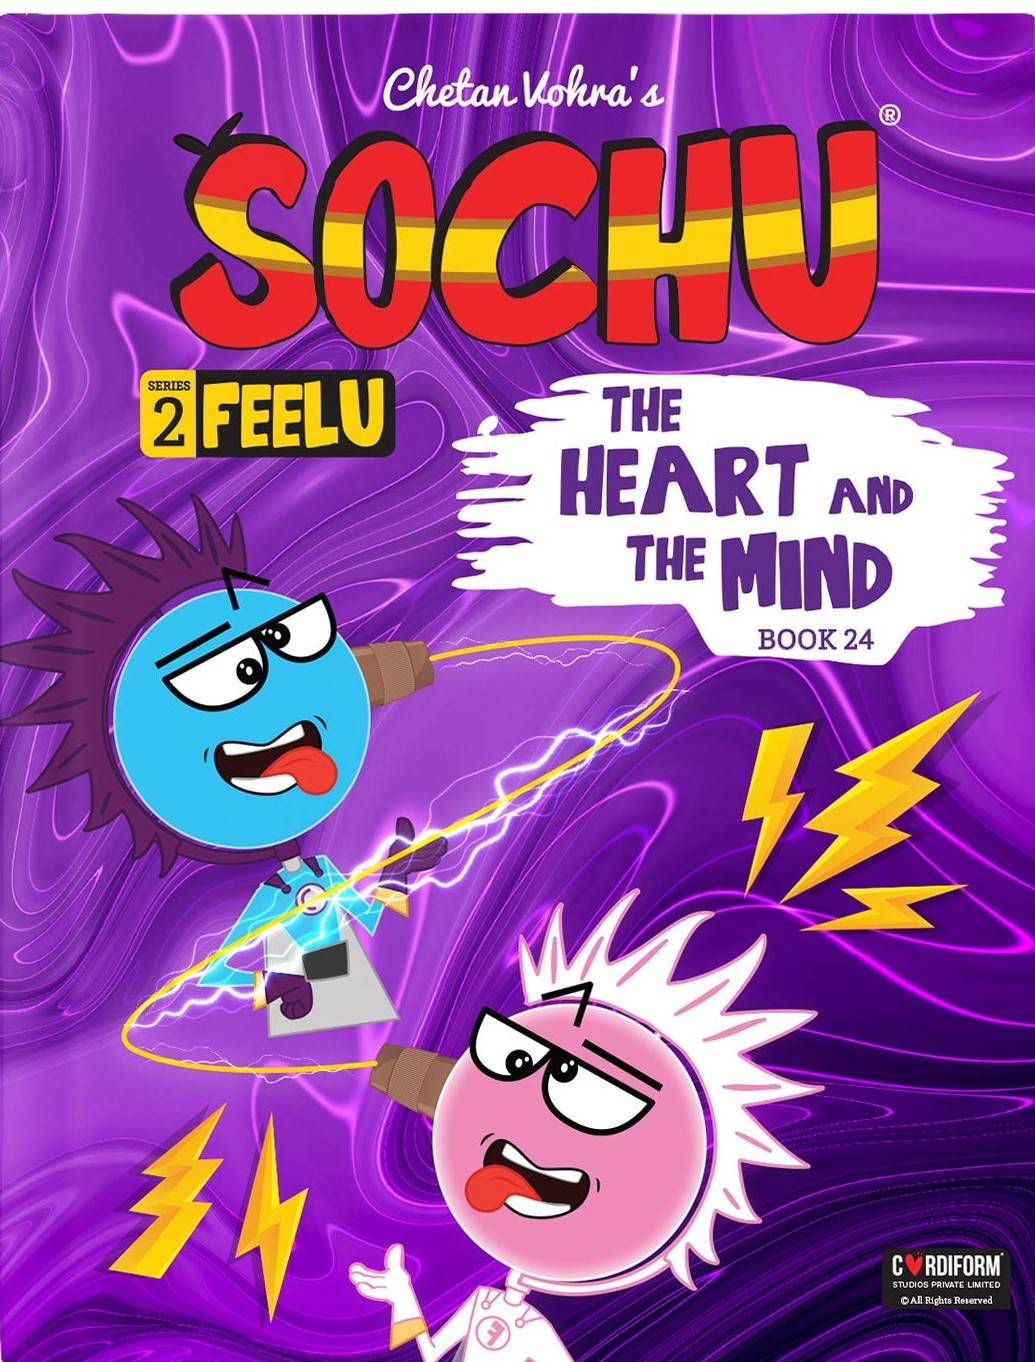 IMG : Sochu Series 2 Feelu The Heart and the Mind # 24